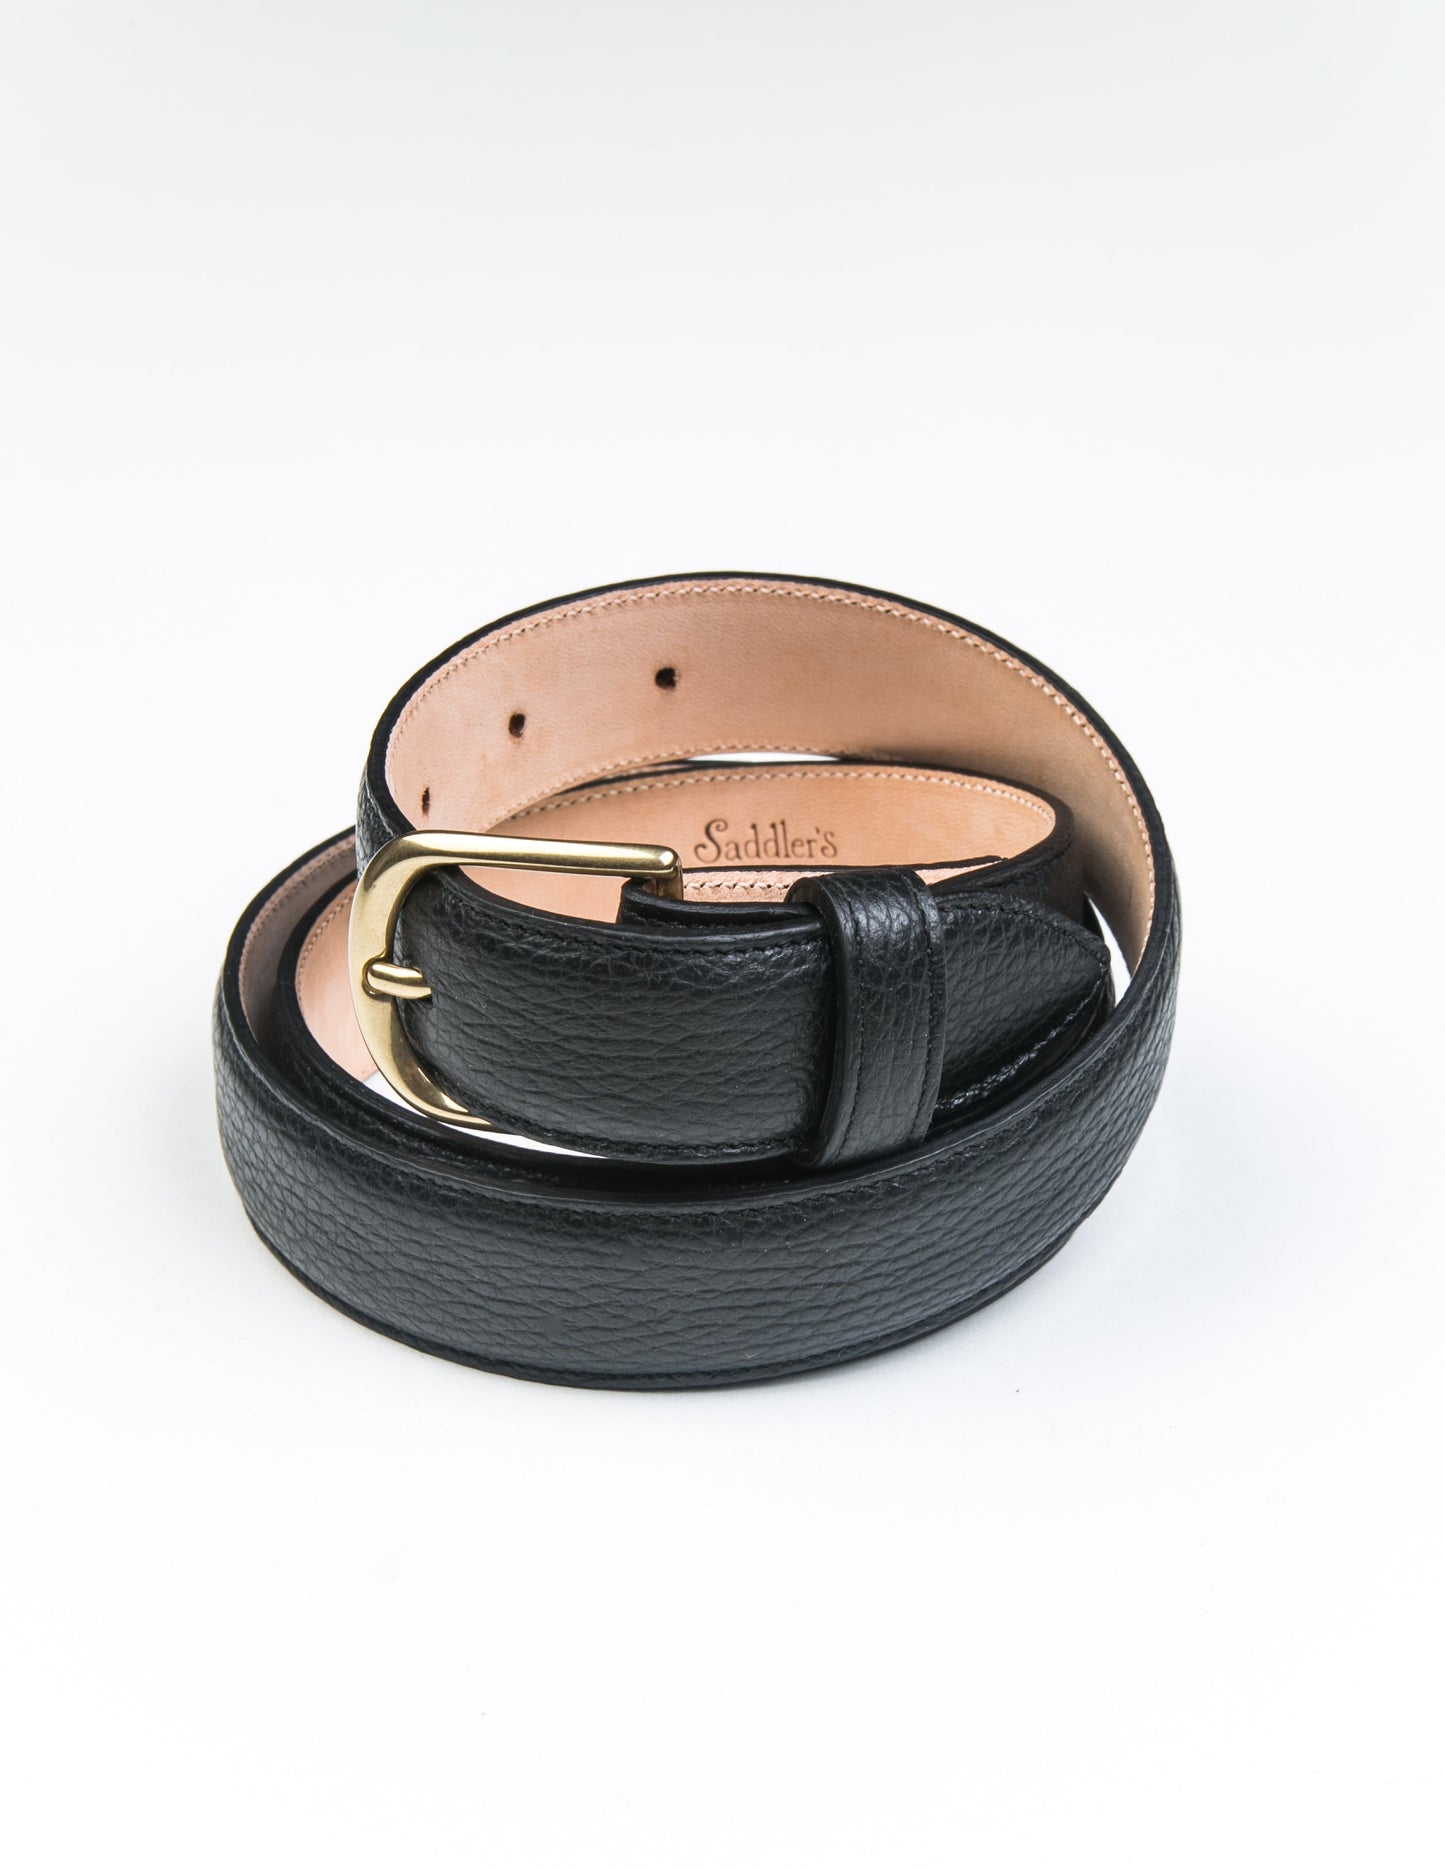 30mm Belt in Grain Leather - Black